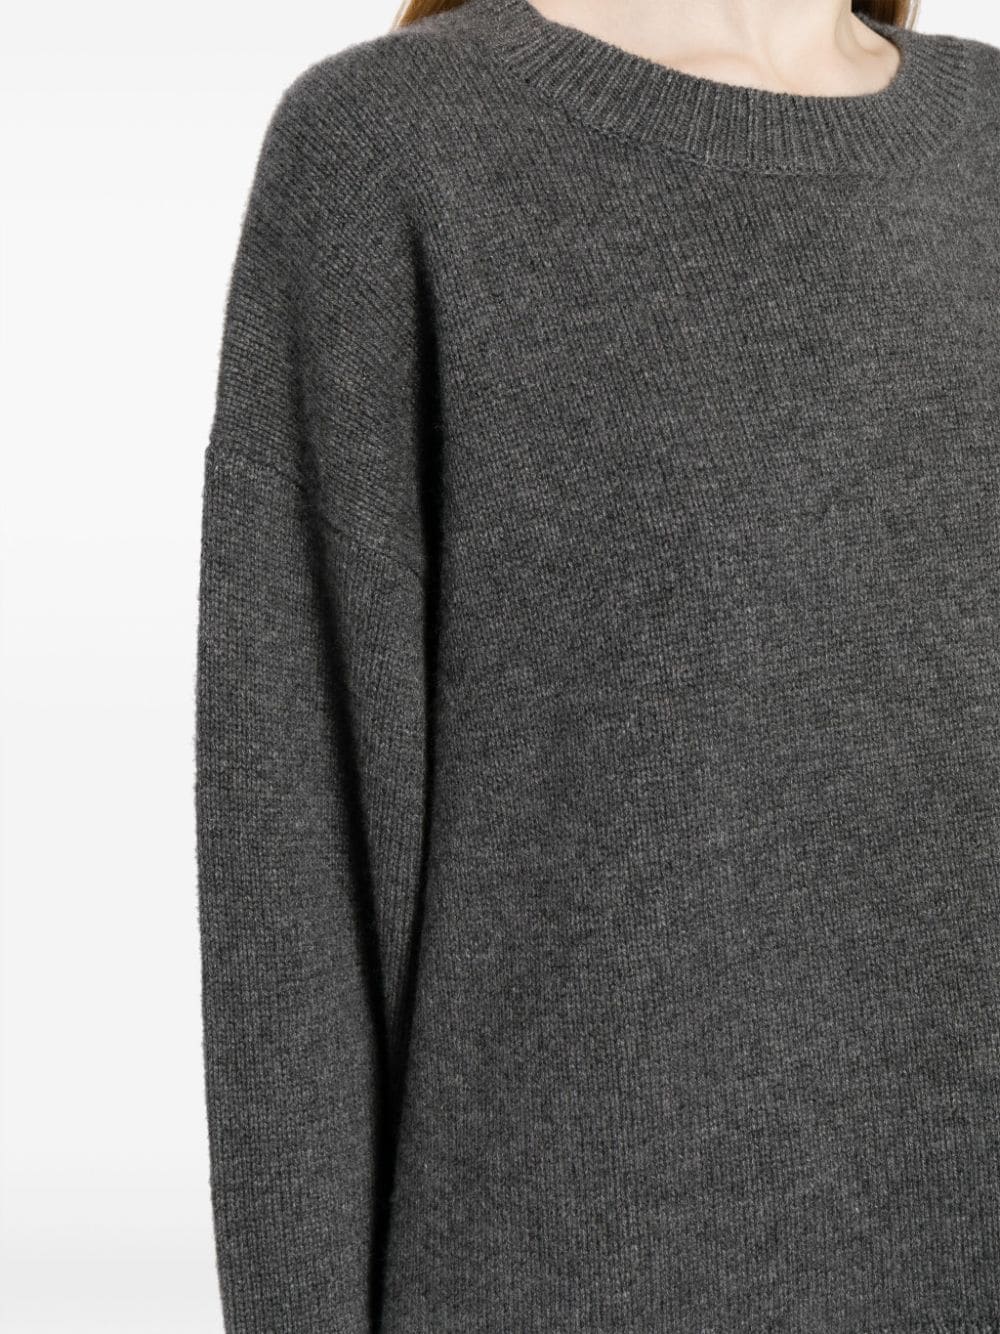 Imogen Sweater in Grey Melange